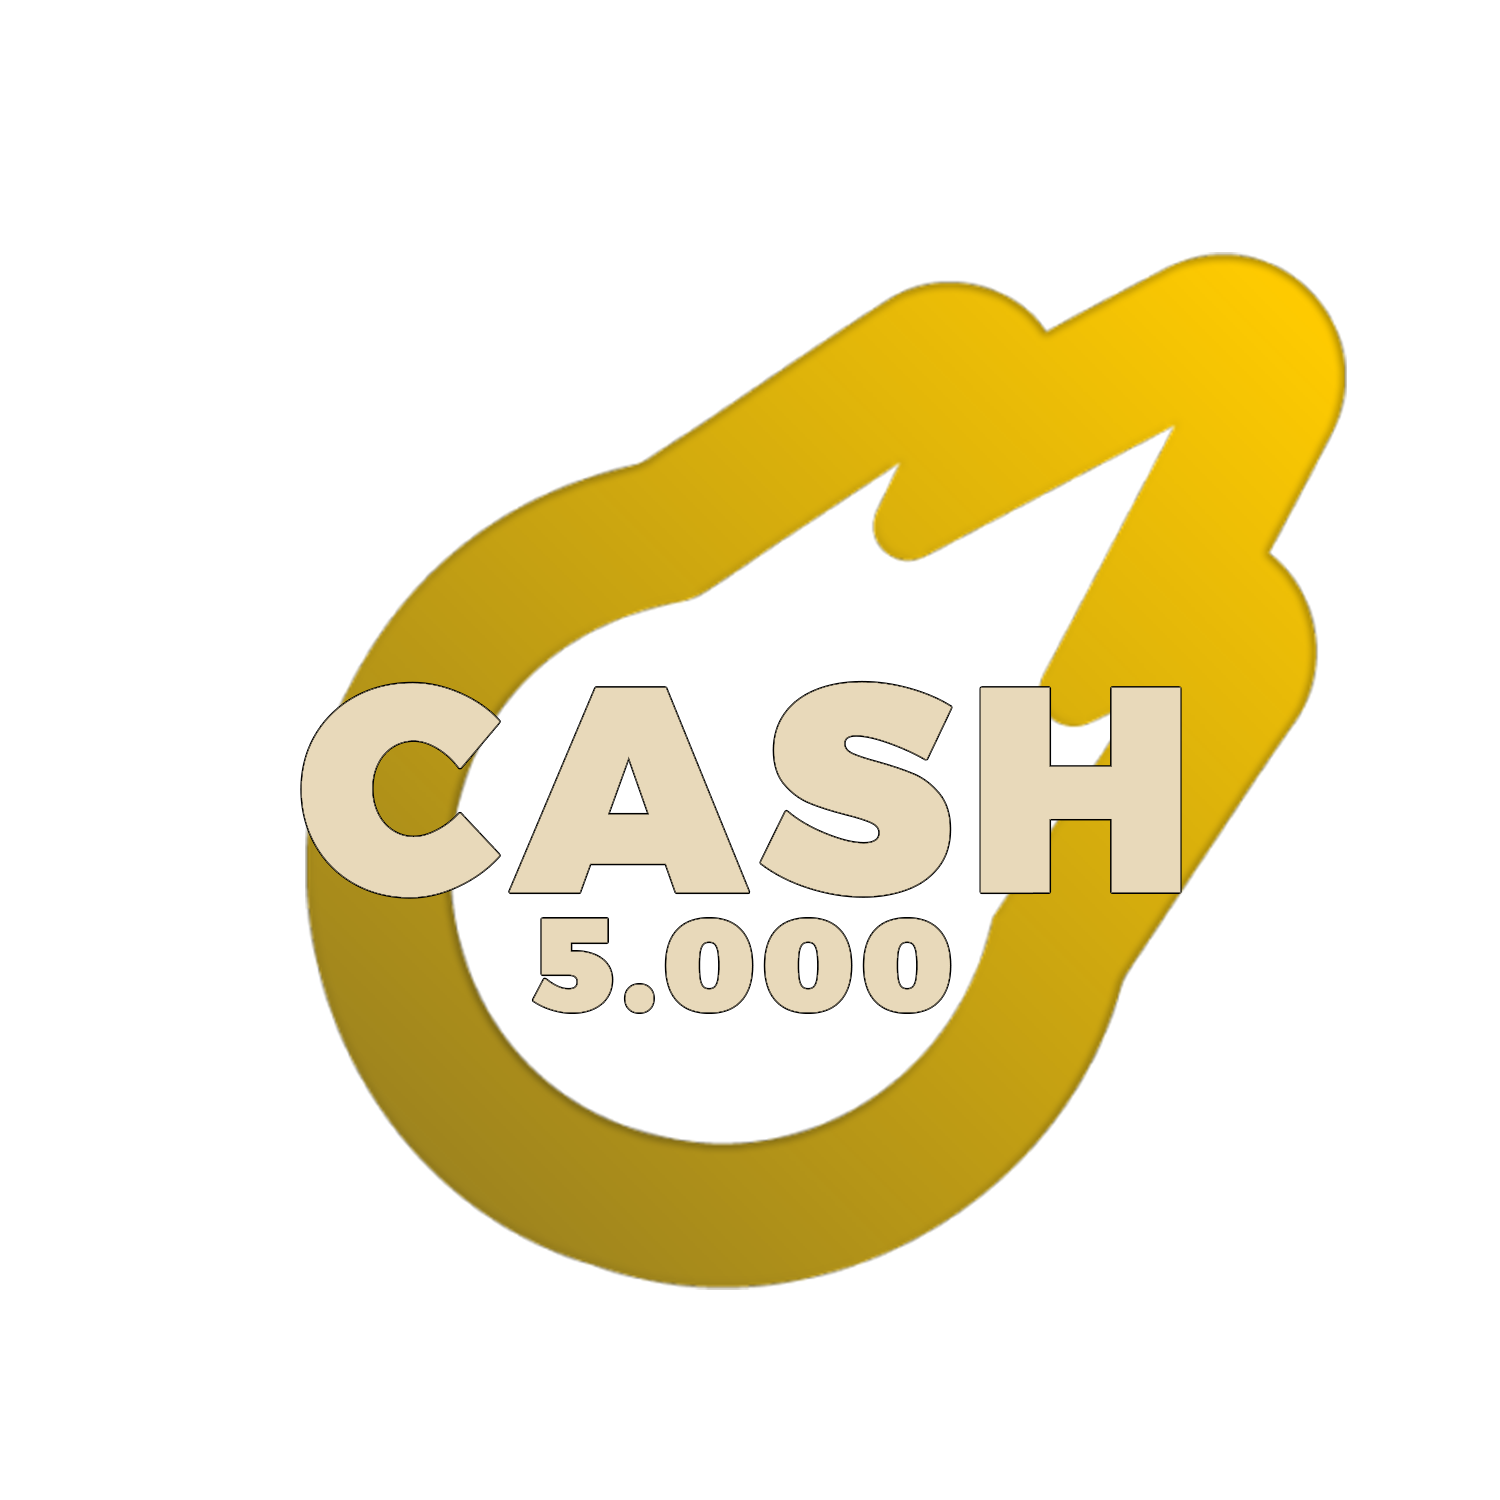 5.000 de Cash